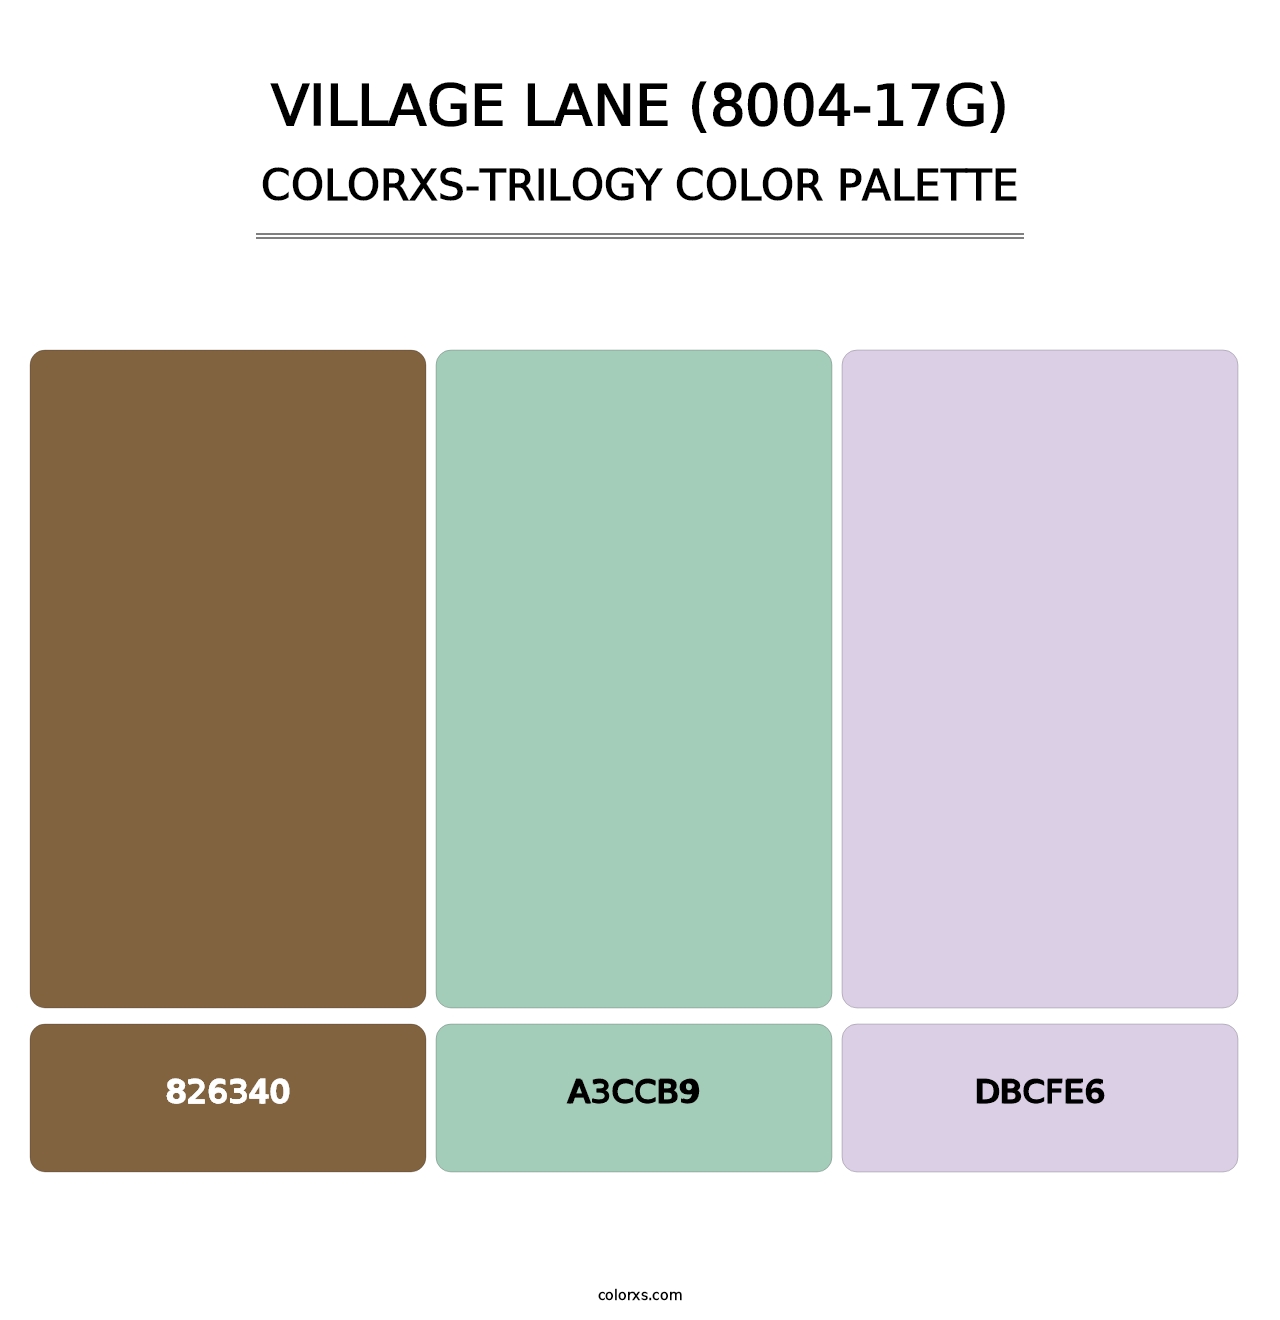 Village Lane (8004-17G) - Colorxs Trilogy Palette